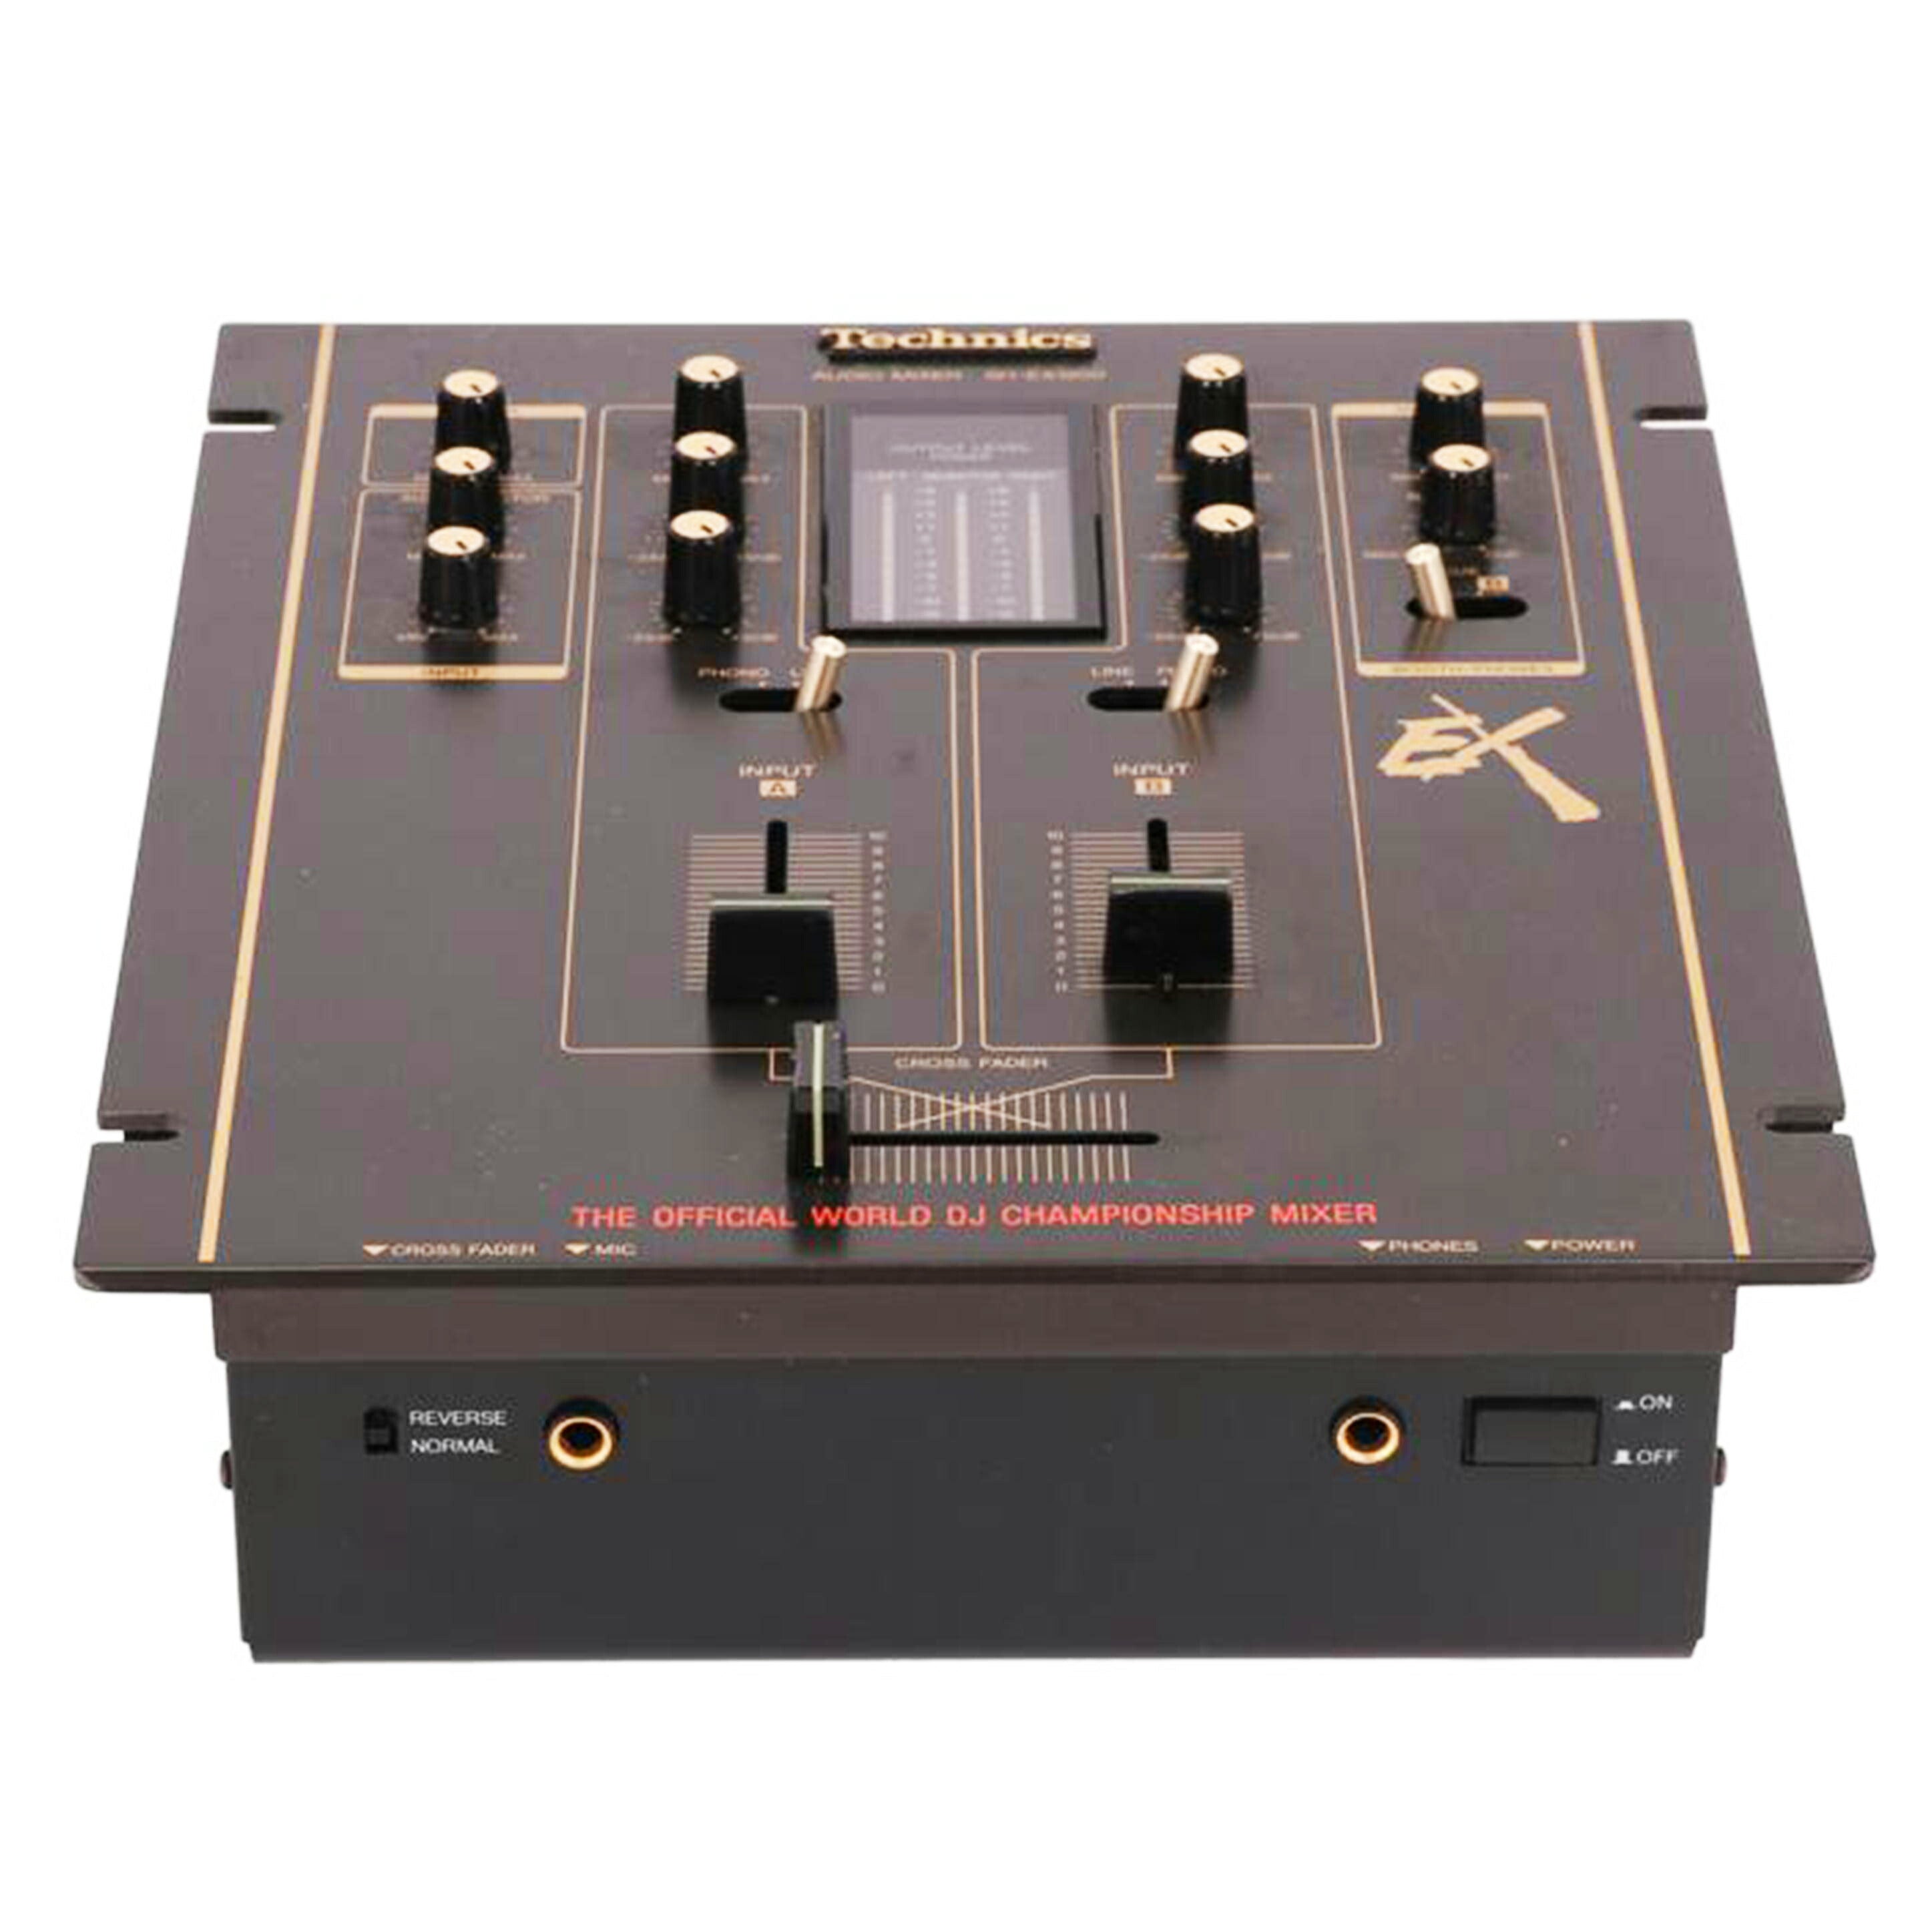 【お値下】Technics テクニクス SH-EX1200 DJミキサー DJミキサー